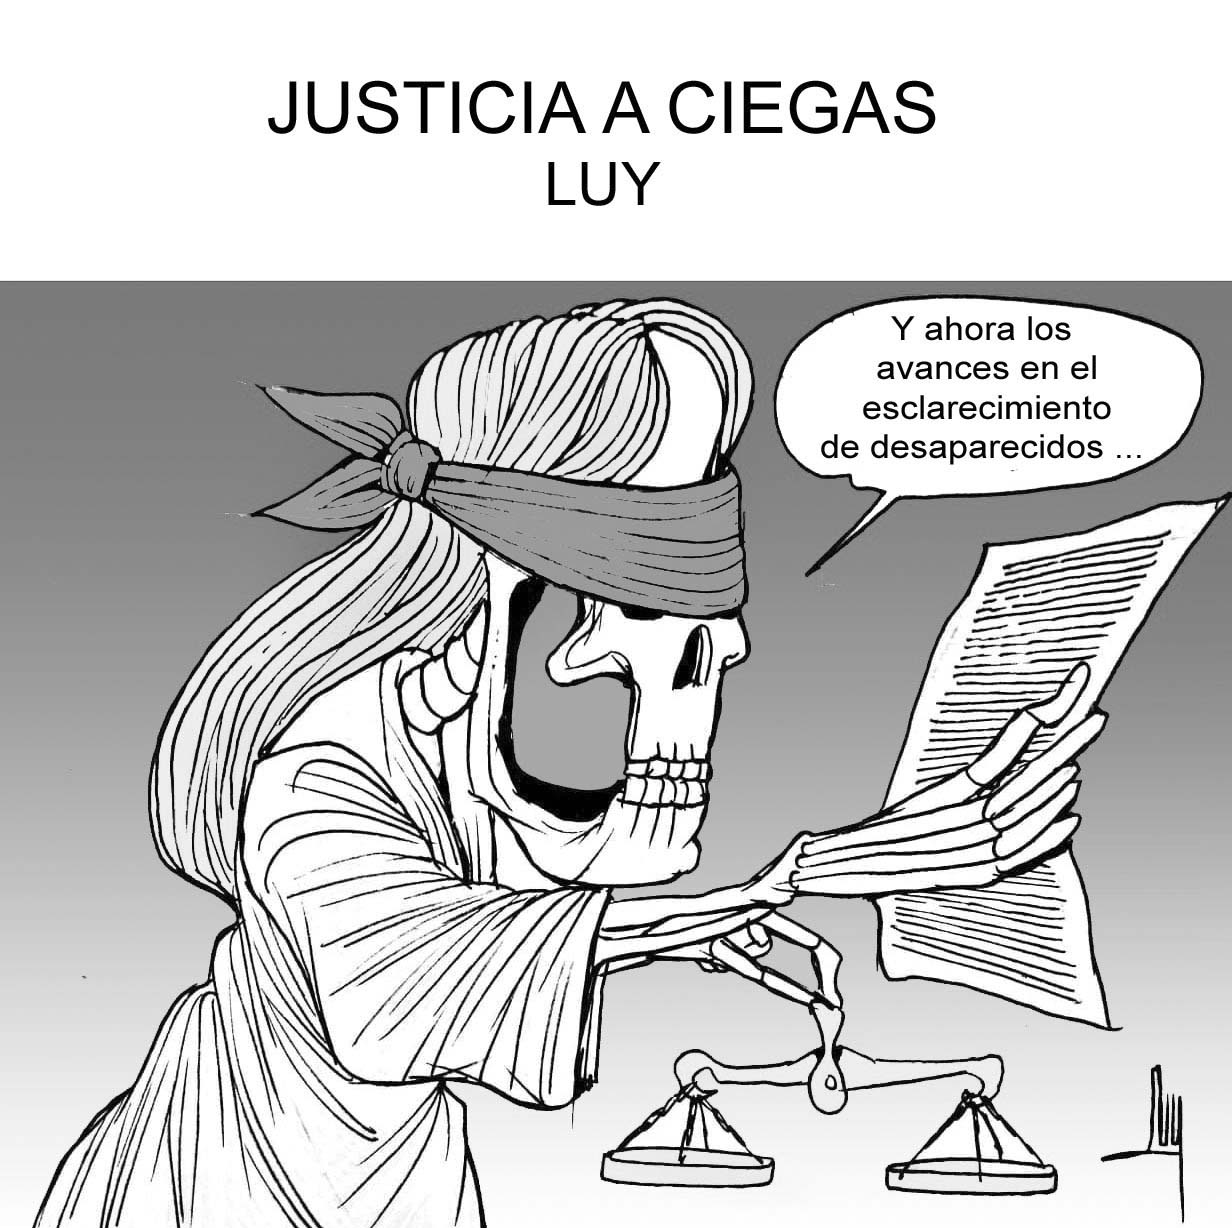 Justicia a ciegas...